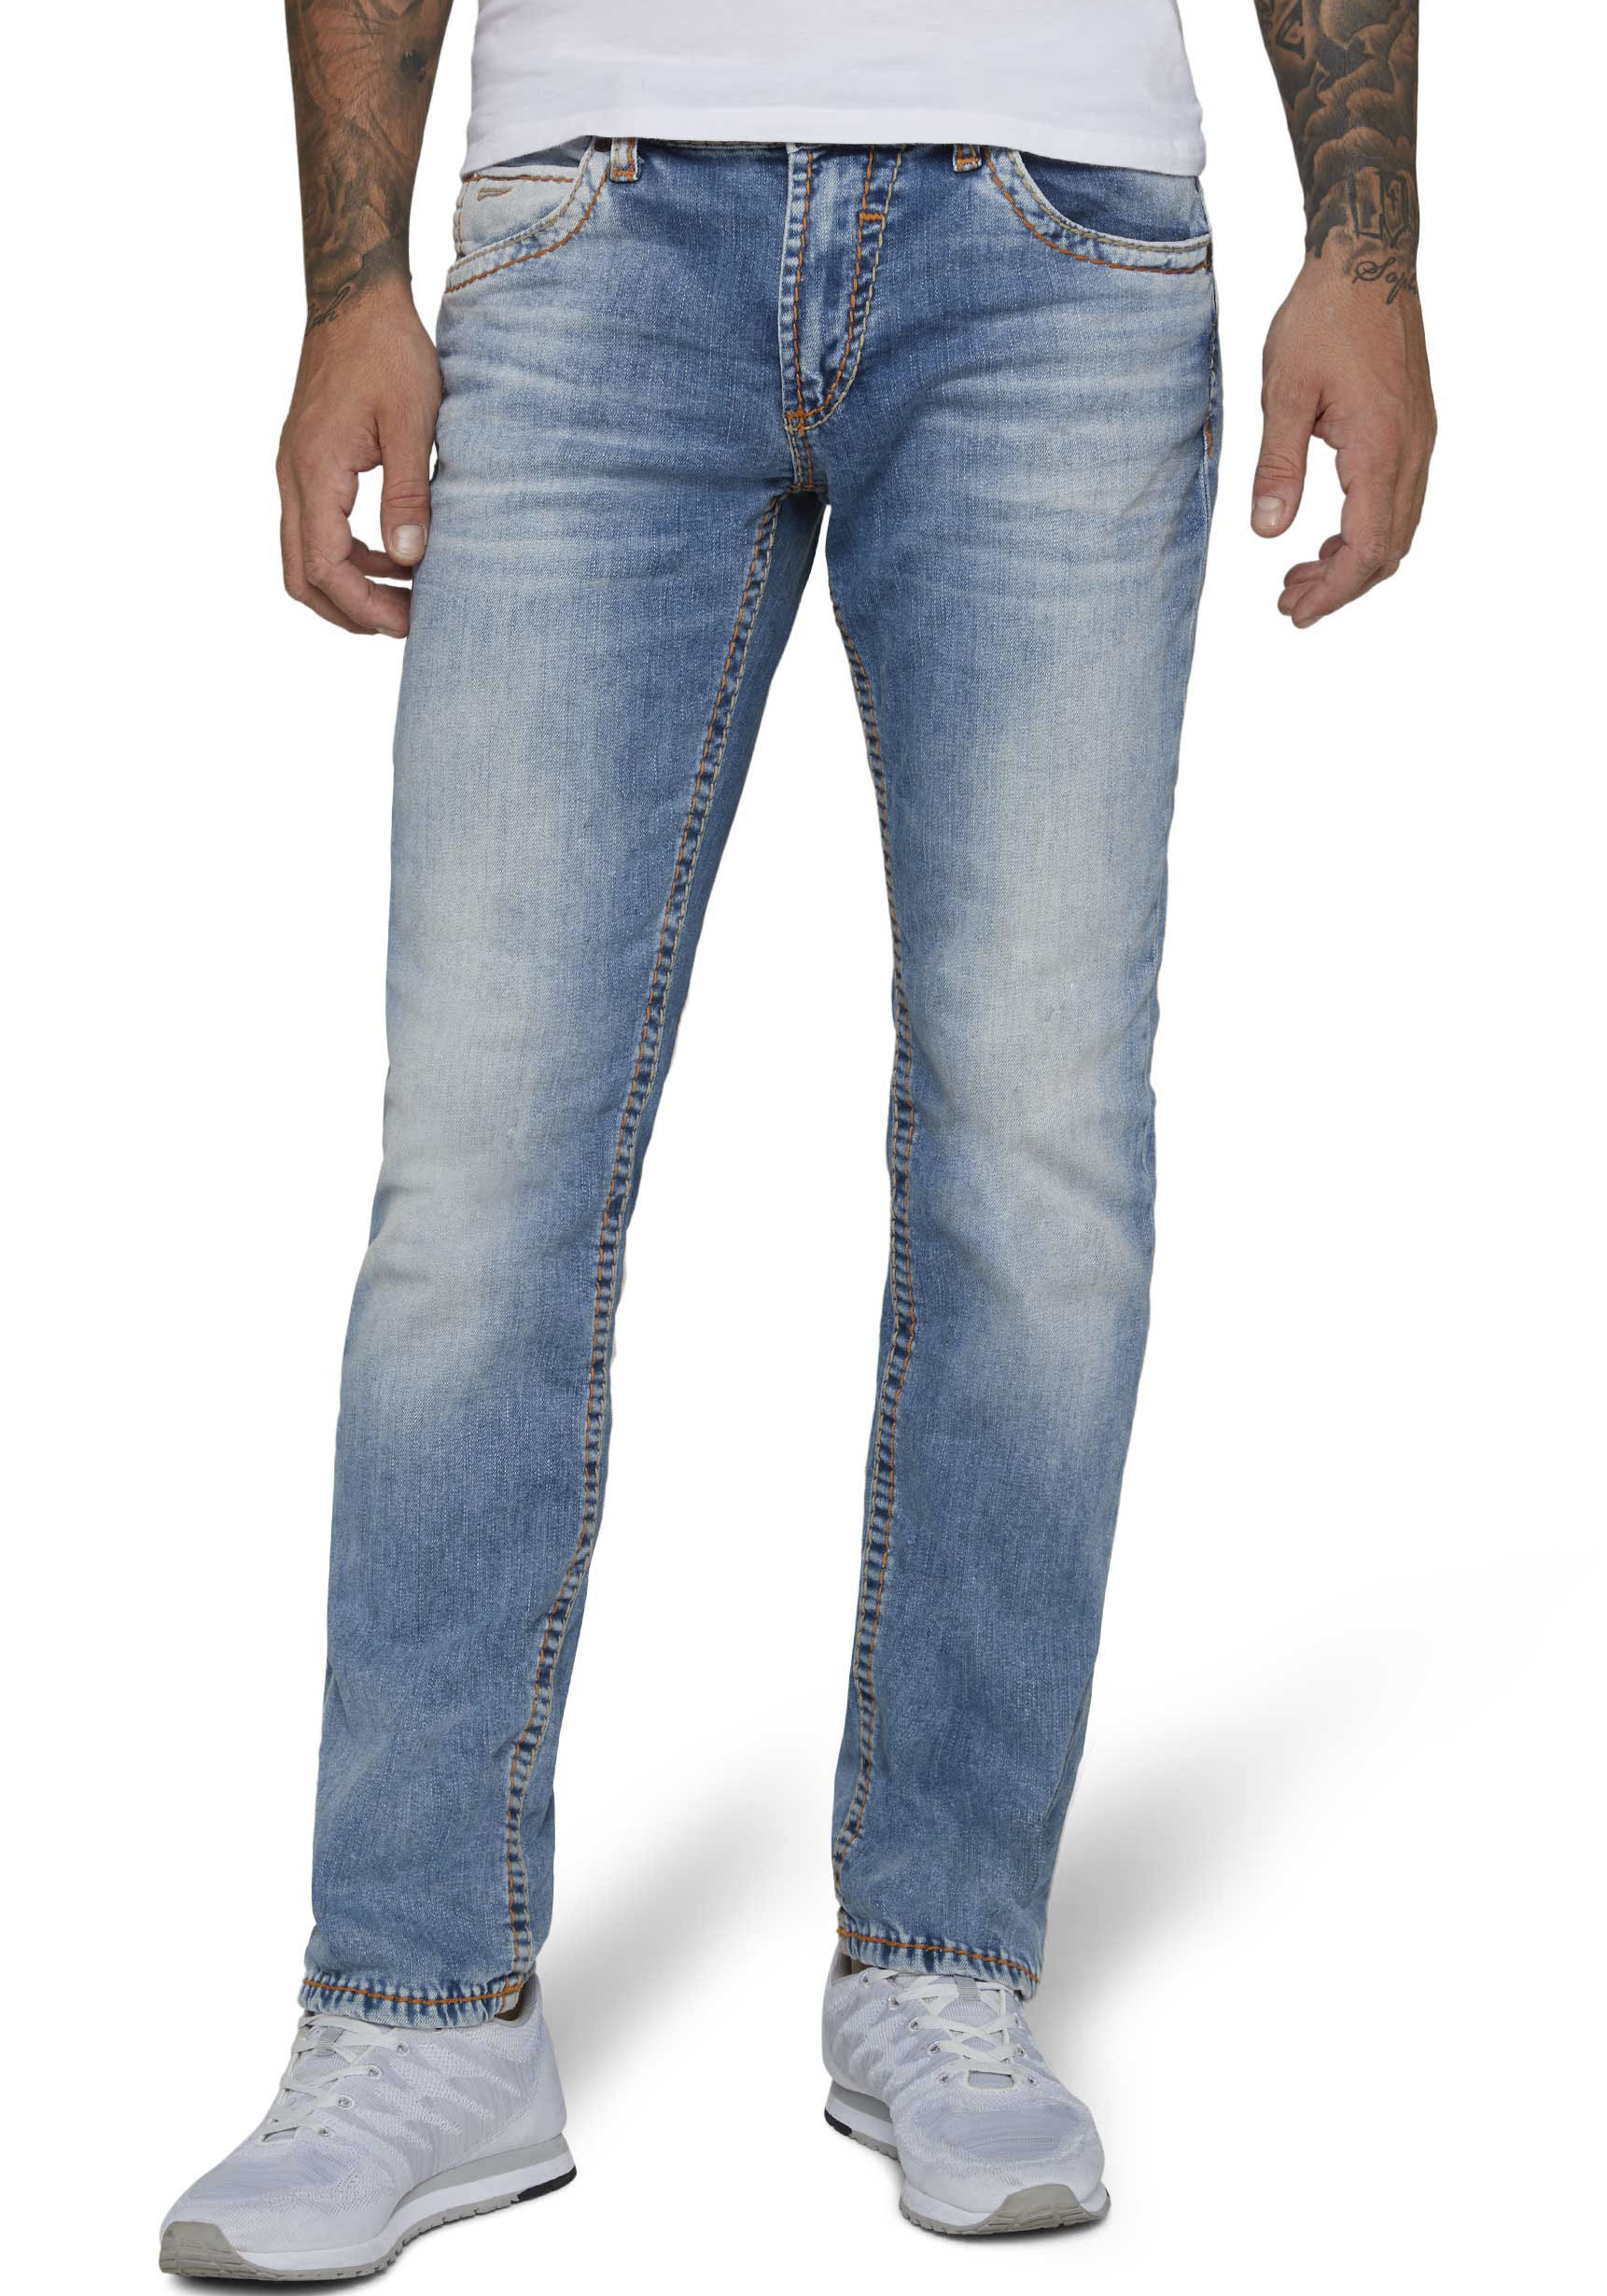 CAMP DAVID Straight-Jeans »NI:CO:R611«, mit markanten Steppnähten von CAMP DAVID